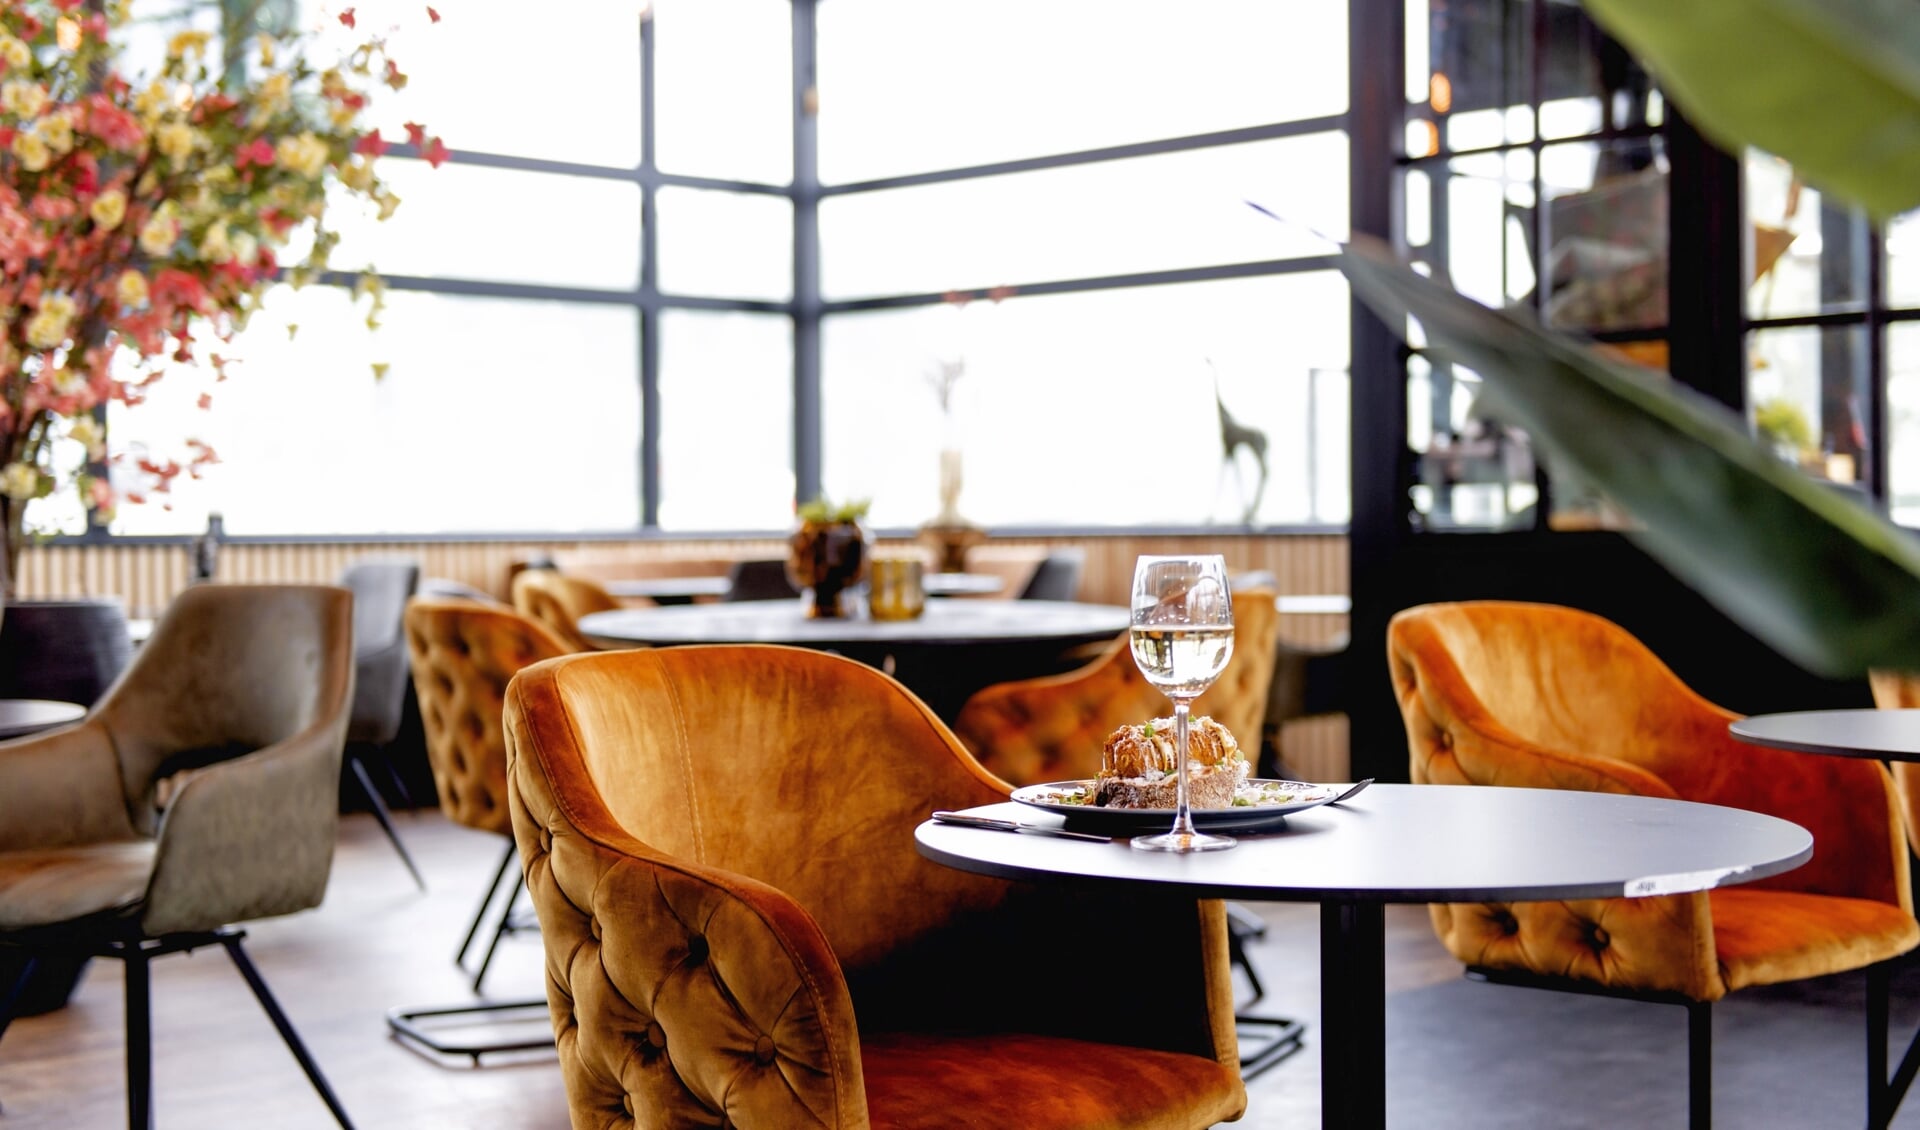 Foodclub BLVD60 opent in september op Lifestyle Boulevard Almelo. Het is volgens eigenaar Eser Güzel ''een plek waar je makkelijk naar binnenloopt en even kunt onthaasten van je drukke leven''.